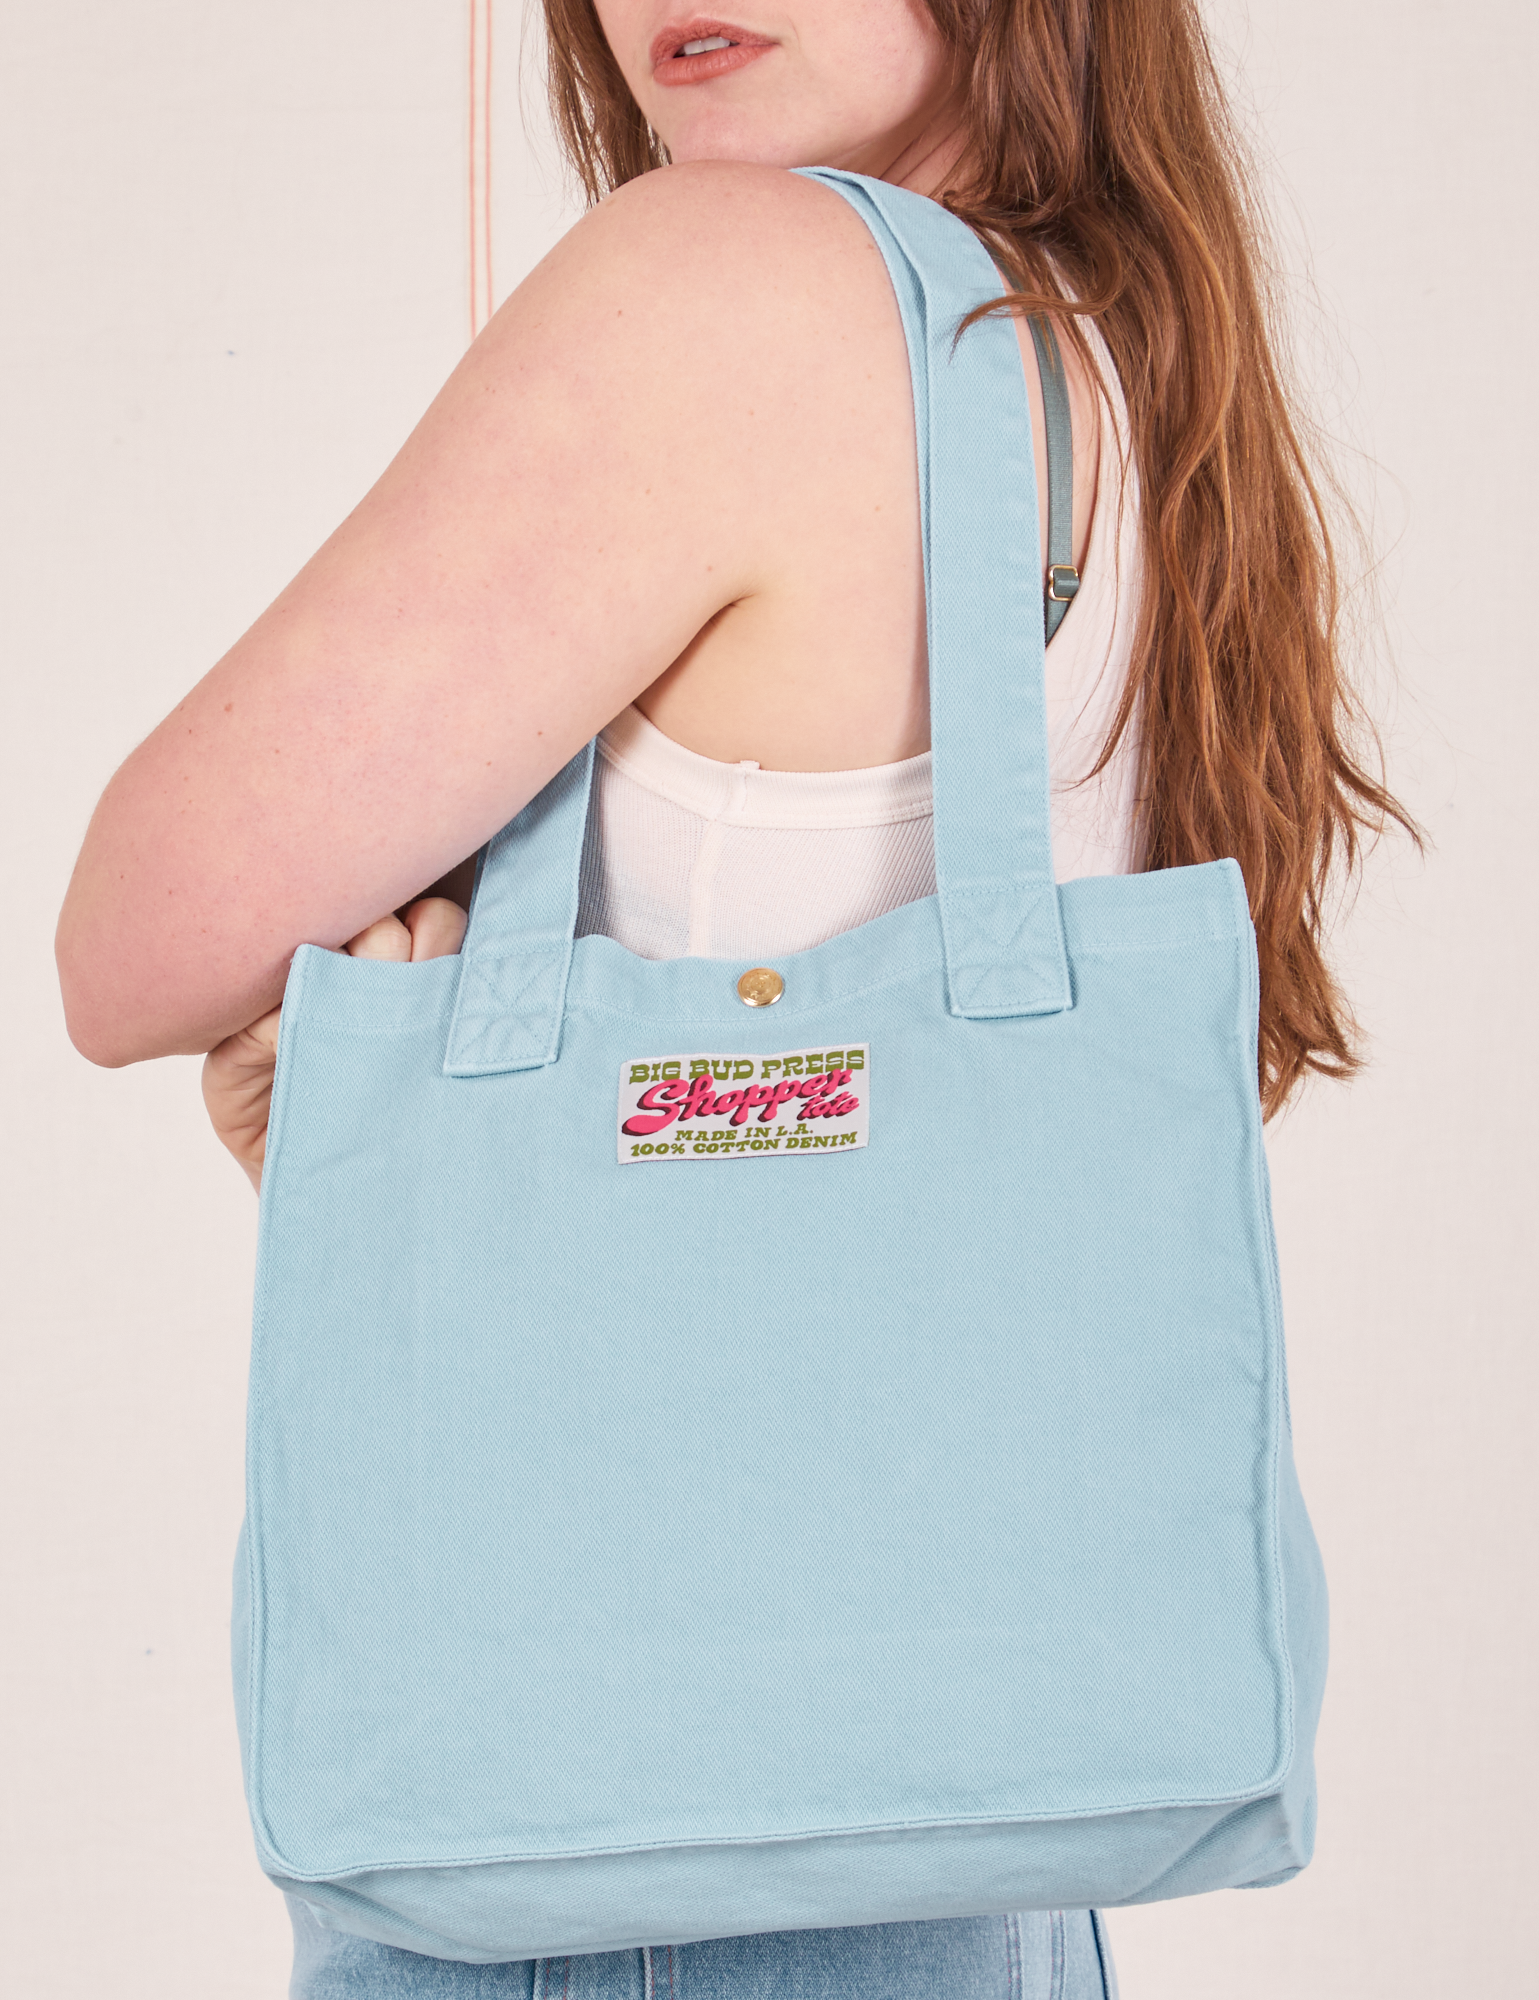 Shopper Tote Bag in Baby Blue worn over shoulder on Allison